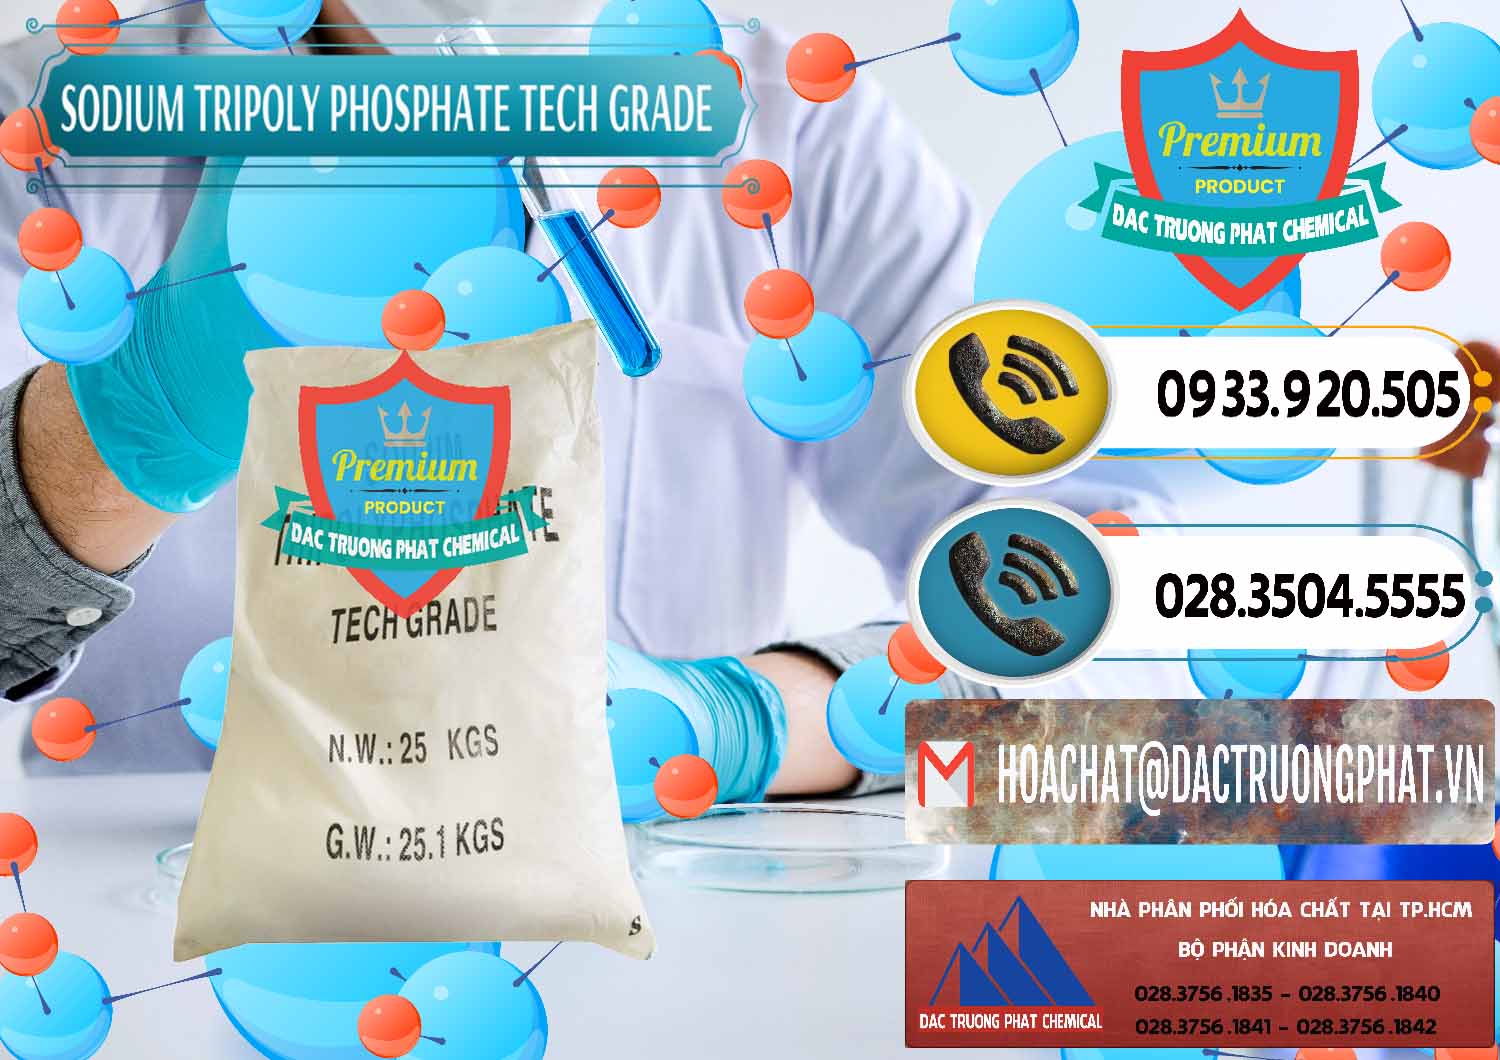 Chuyên bán & phân phối Sodium Tripoly Phosphate - STPP Tech Grade Trung Quốc China - 0453 - Đơn vị chuyên bán _ cung cấp hóa chất tại TP.HCM - hoachatdetnhuom.vn